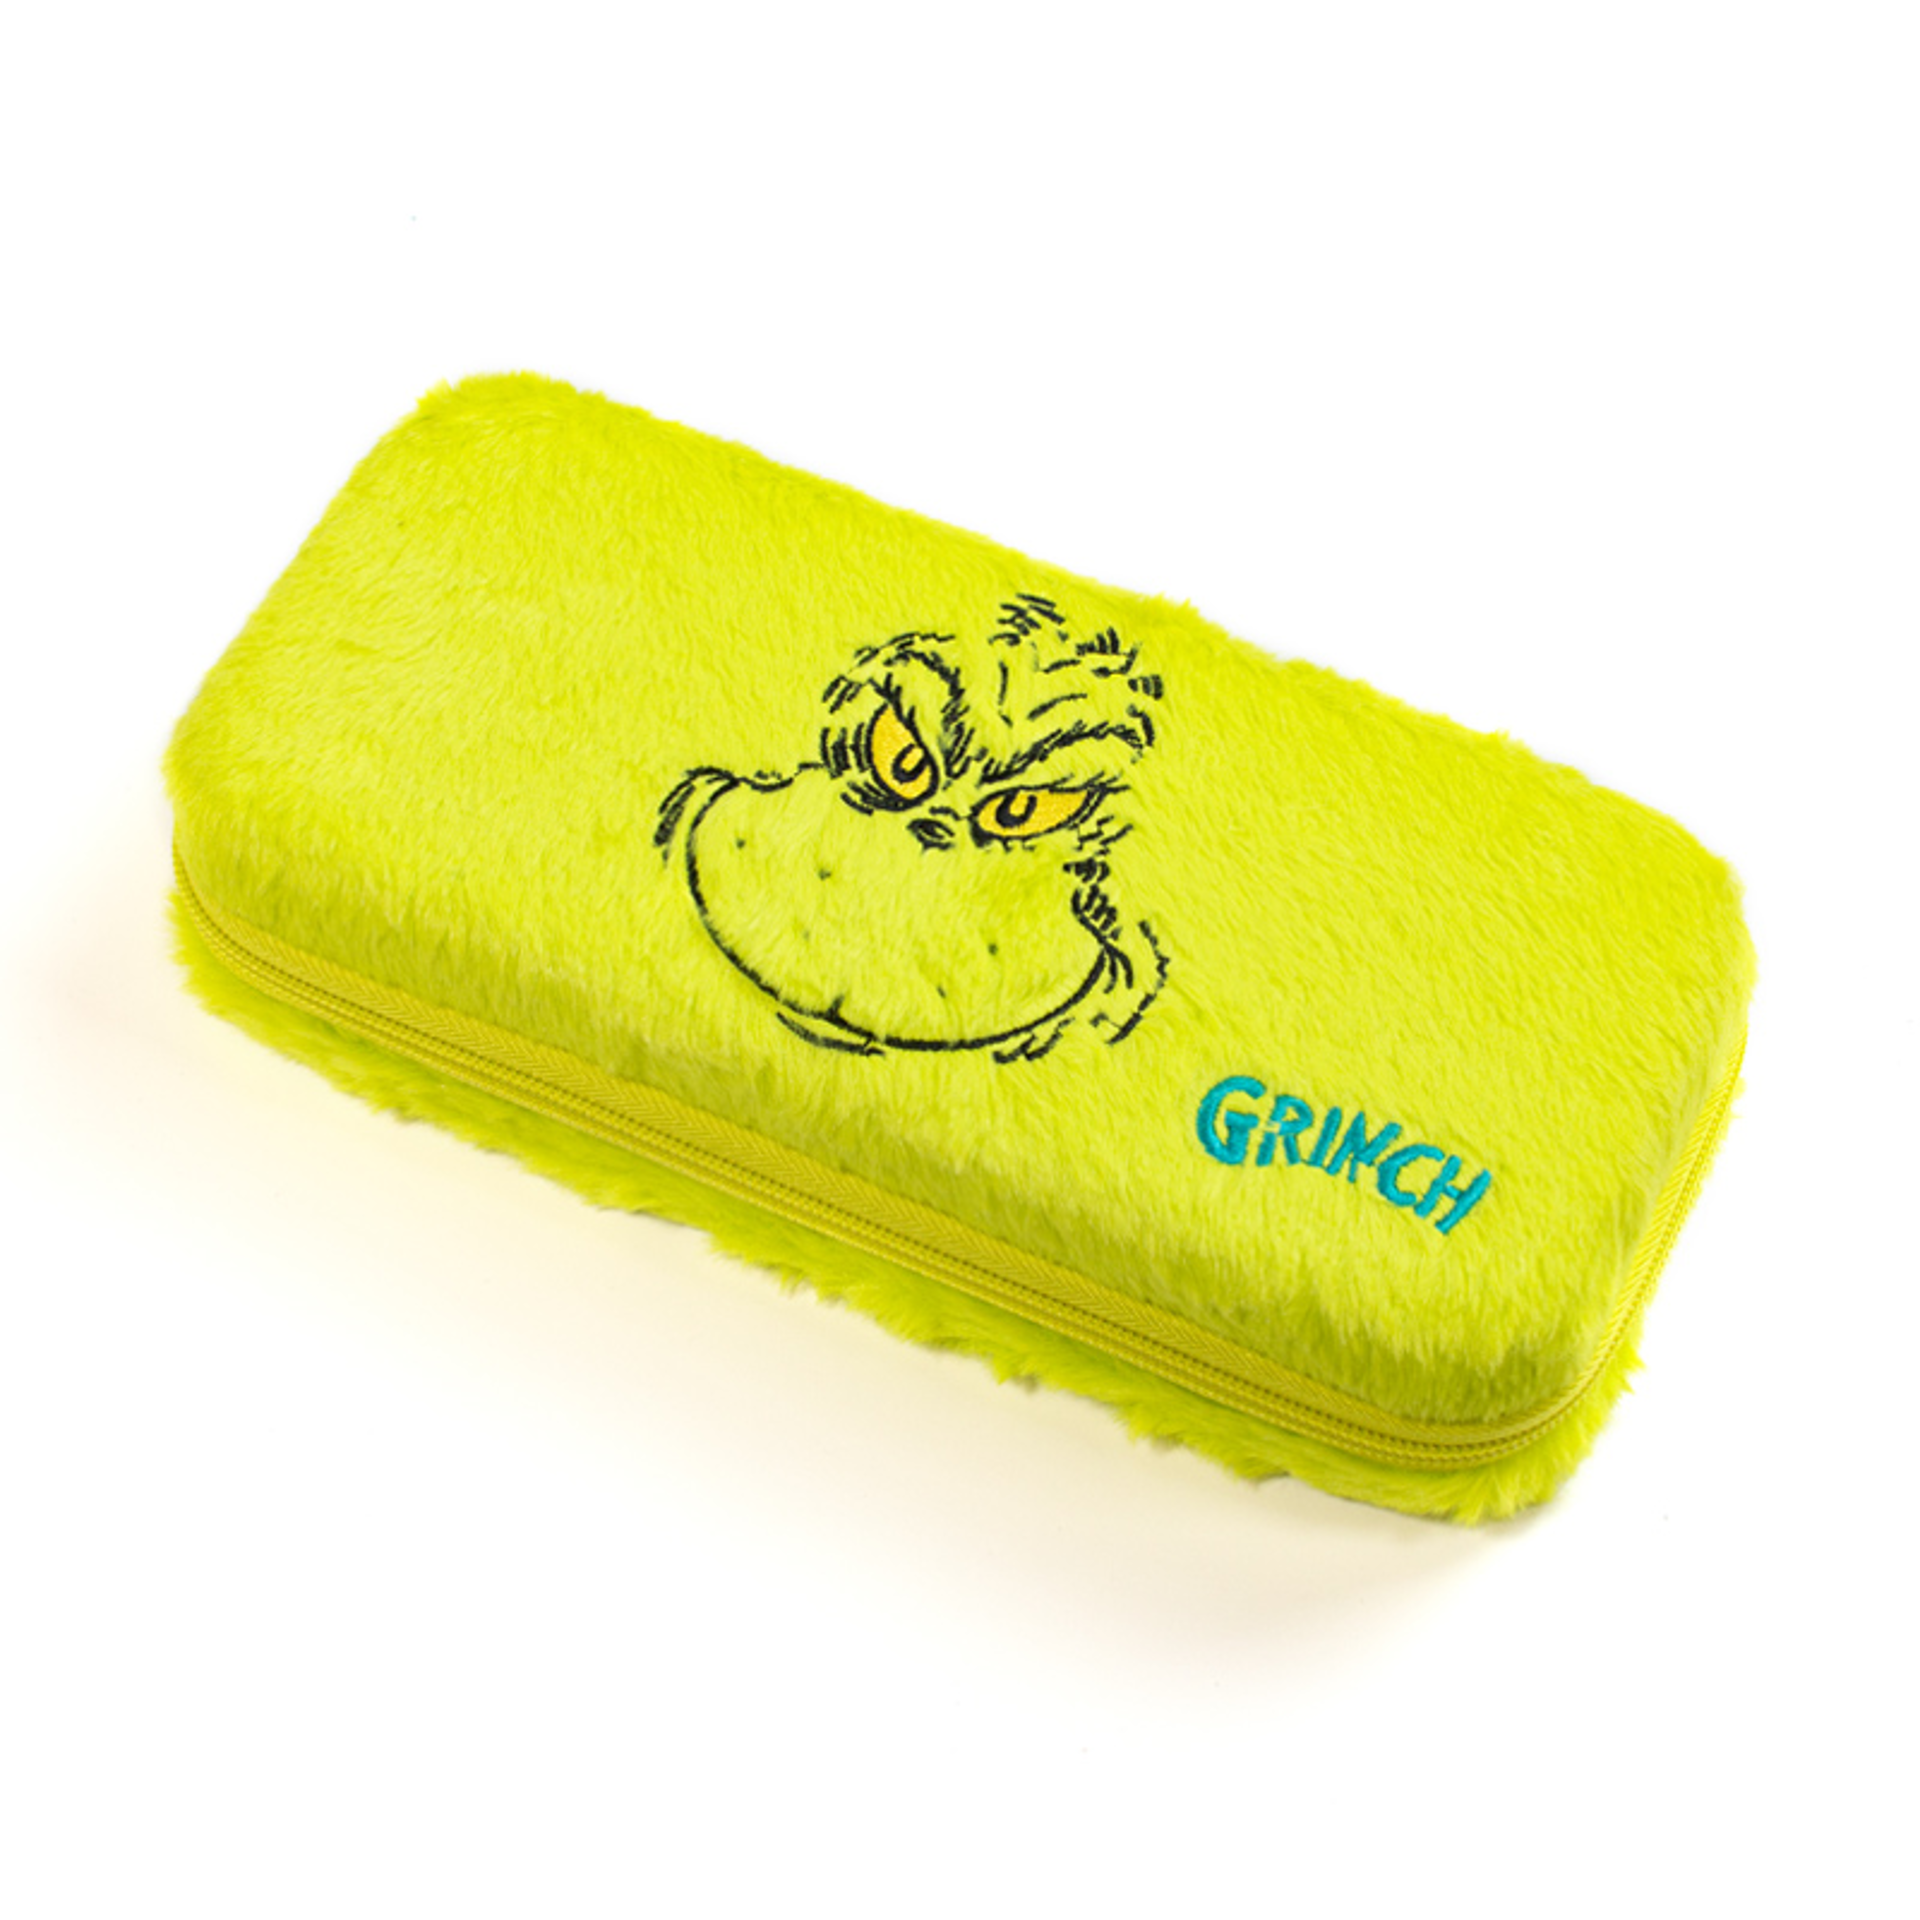 Le Grinch - Housse de transport officielle du Grinch pour Nintendo Switch